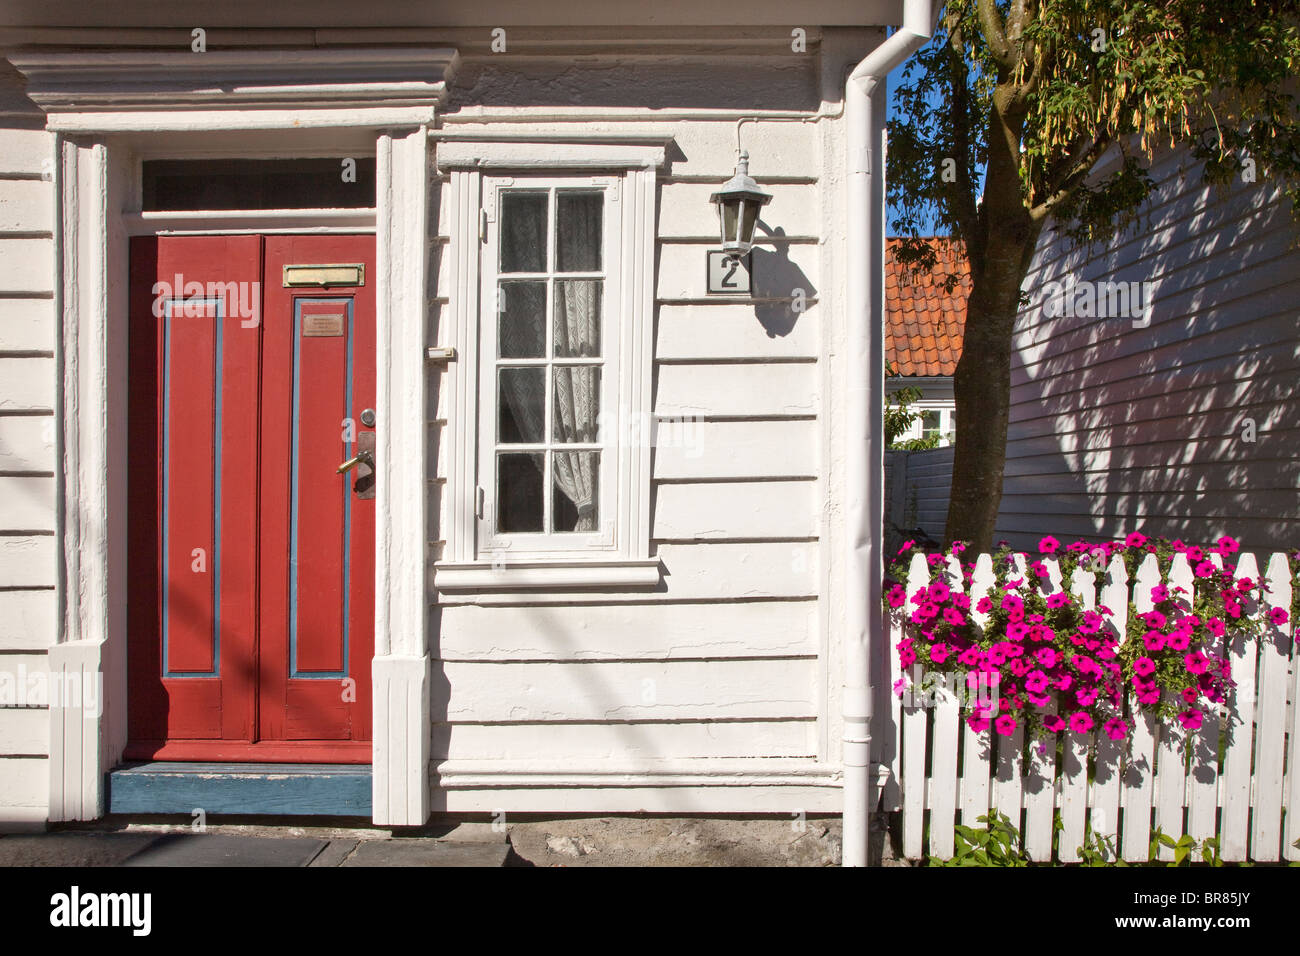 Vieux Stavanger (Gamle Stavanger) montent à bord blanc des maisons, la Norvège Banque D'Images